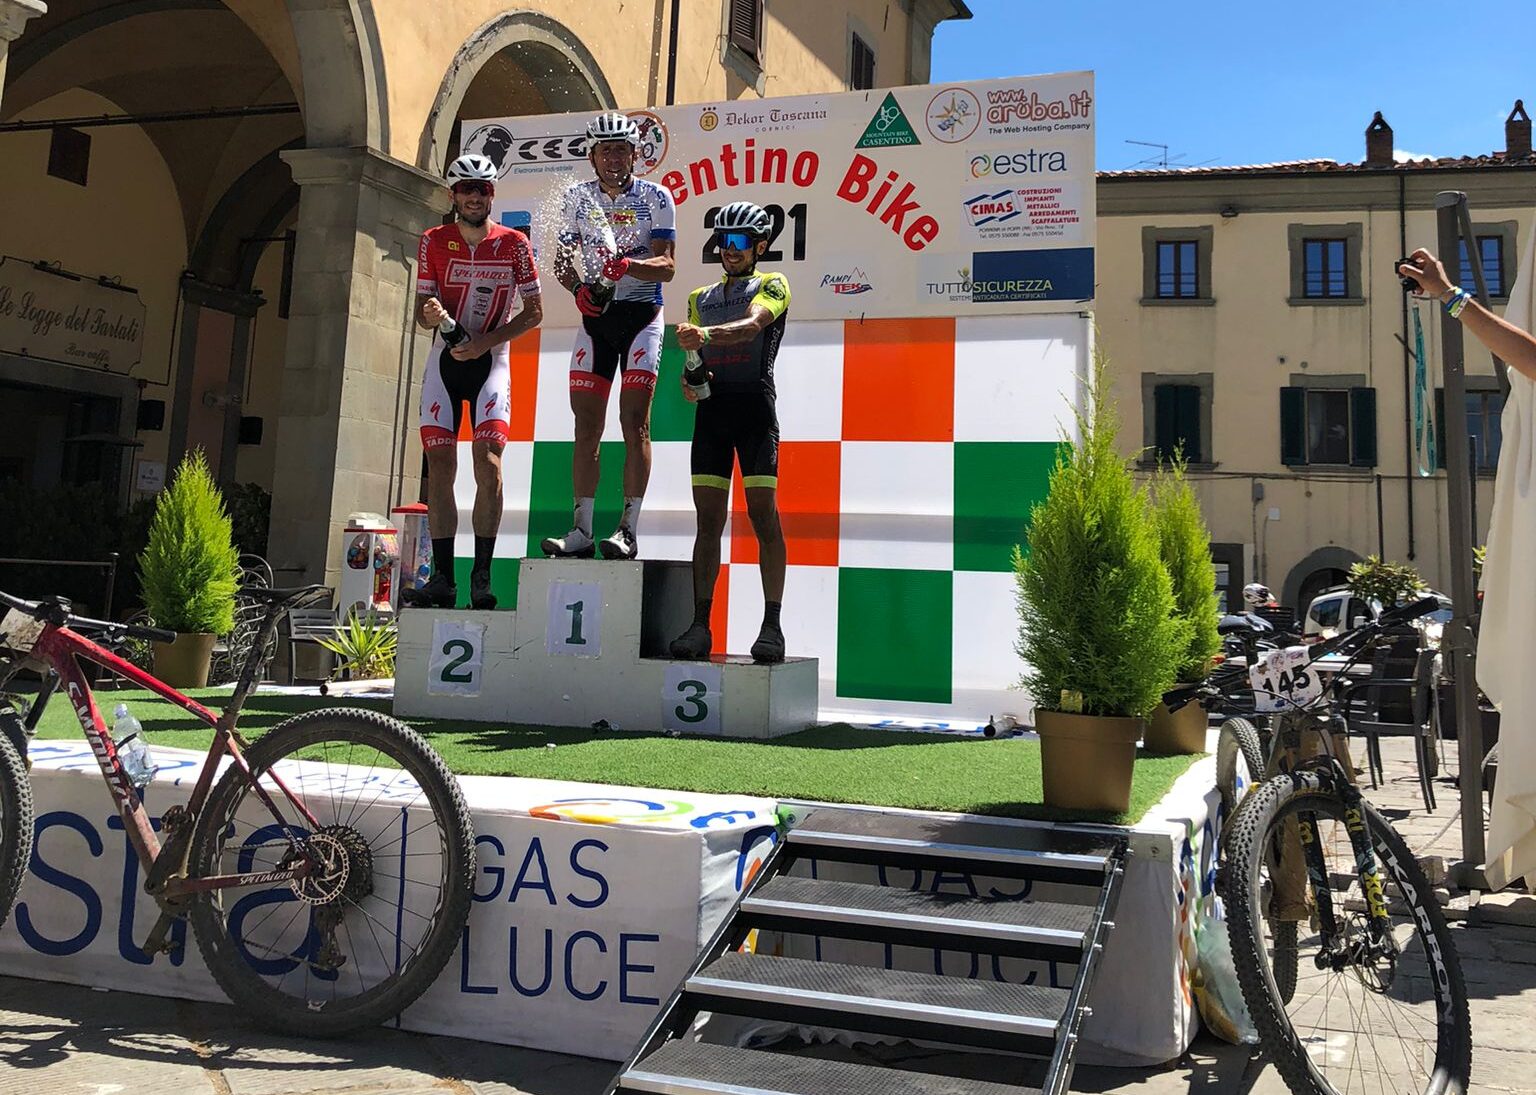 28esima edizione della Casentino Bike: Francesco Casagrande conquista il podio